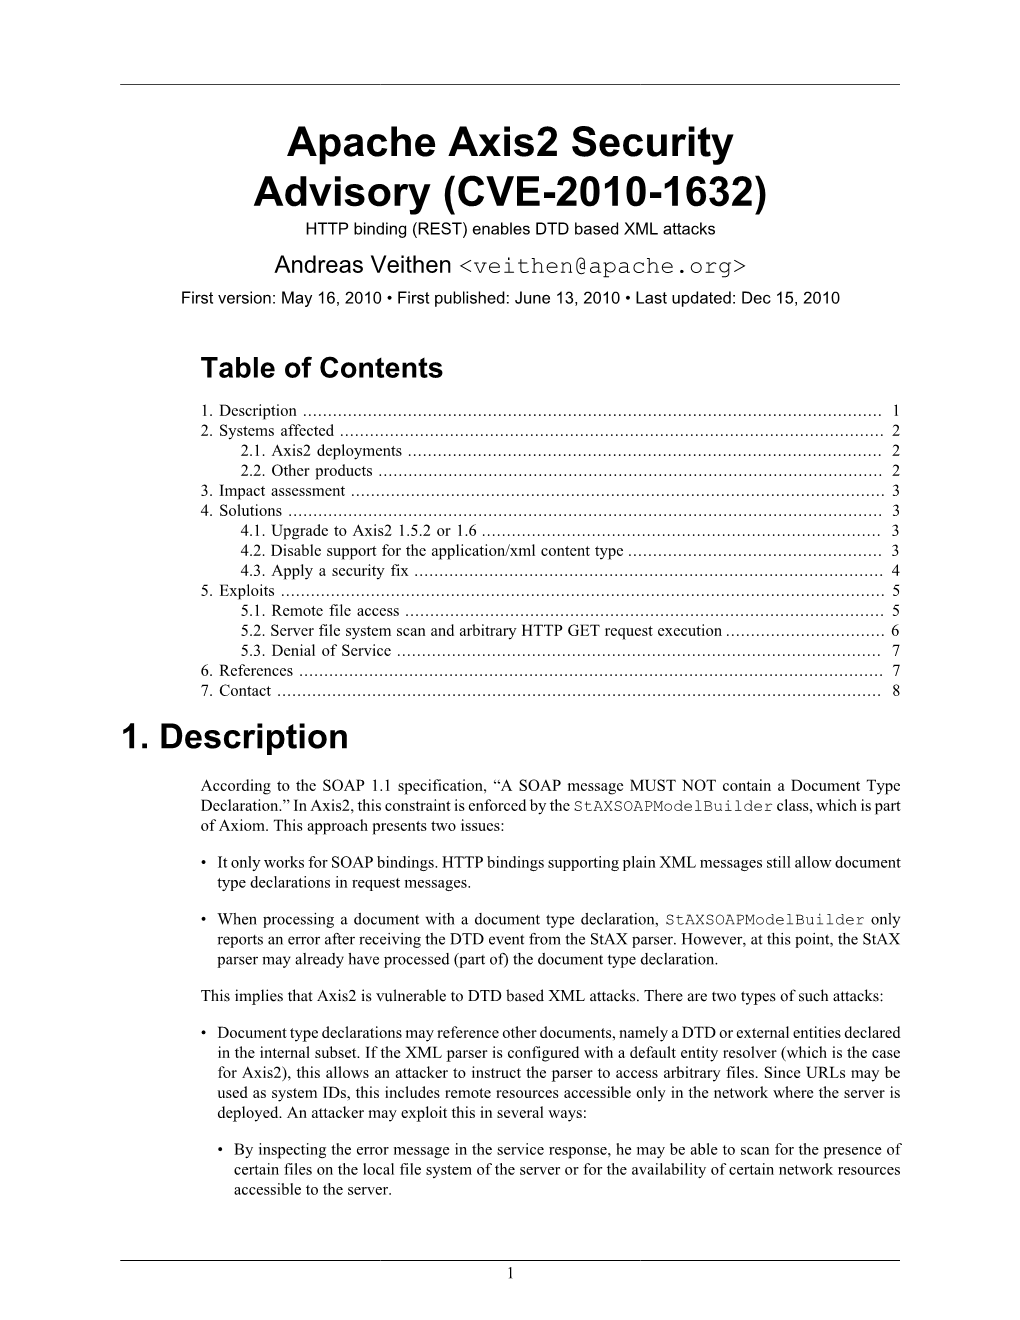 Apache Axis2 Security Advisory (CVE-2010-1632)